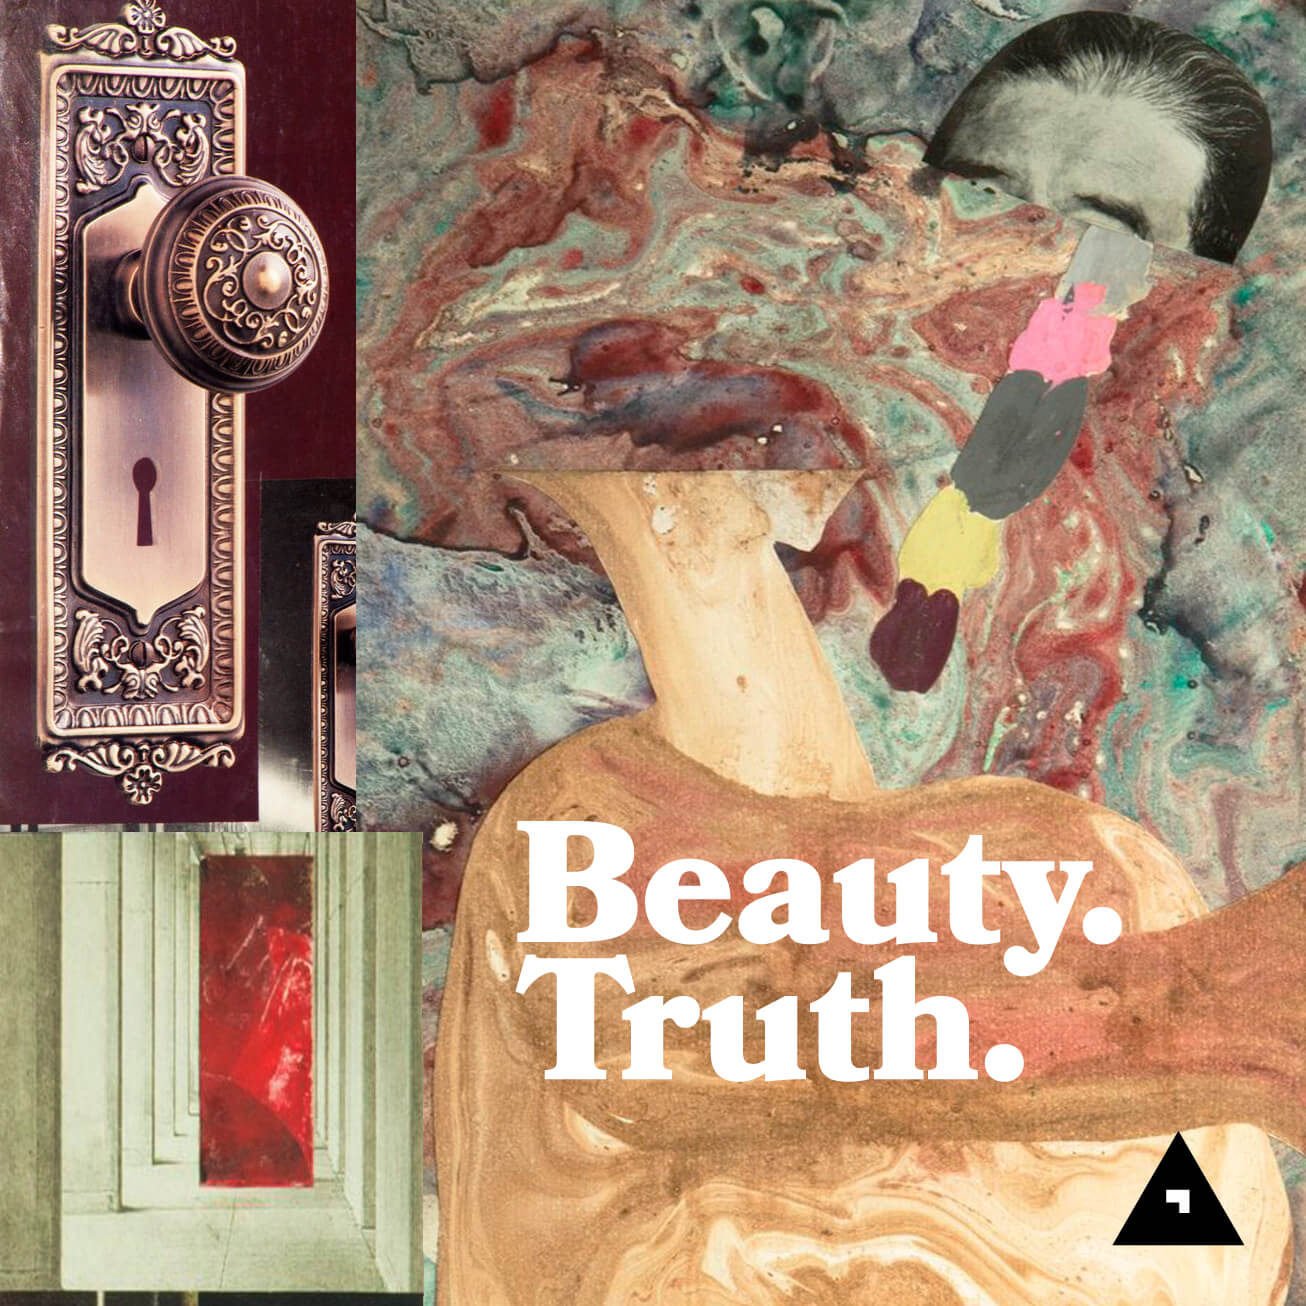 Beauty. Truth. Podcast by Har Adonai